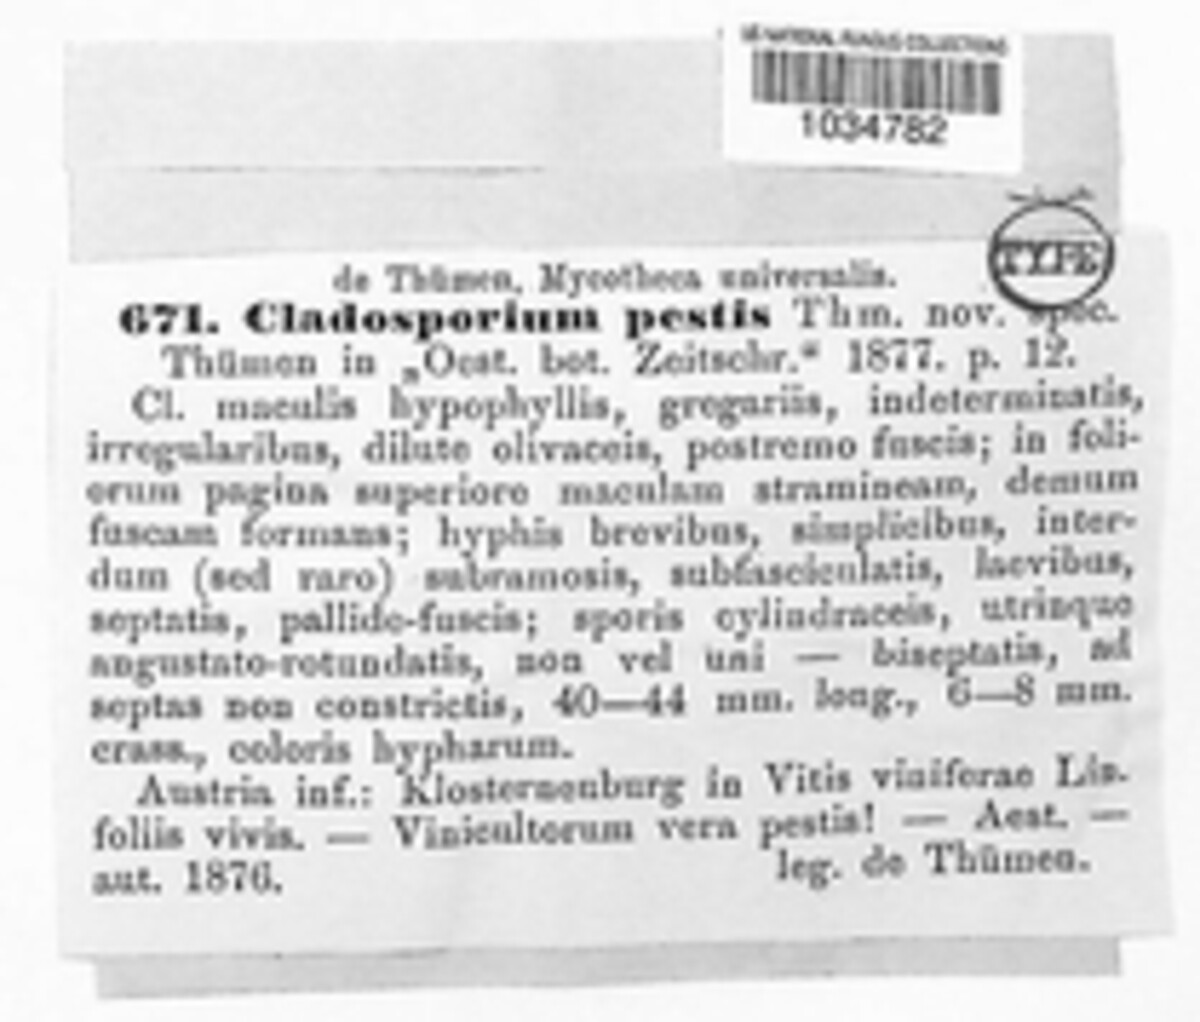 Cladosporium pestis image